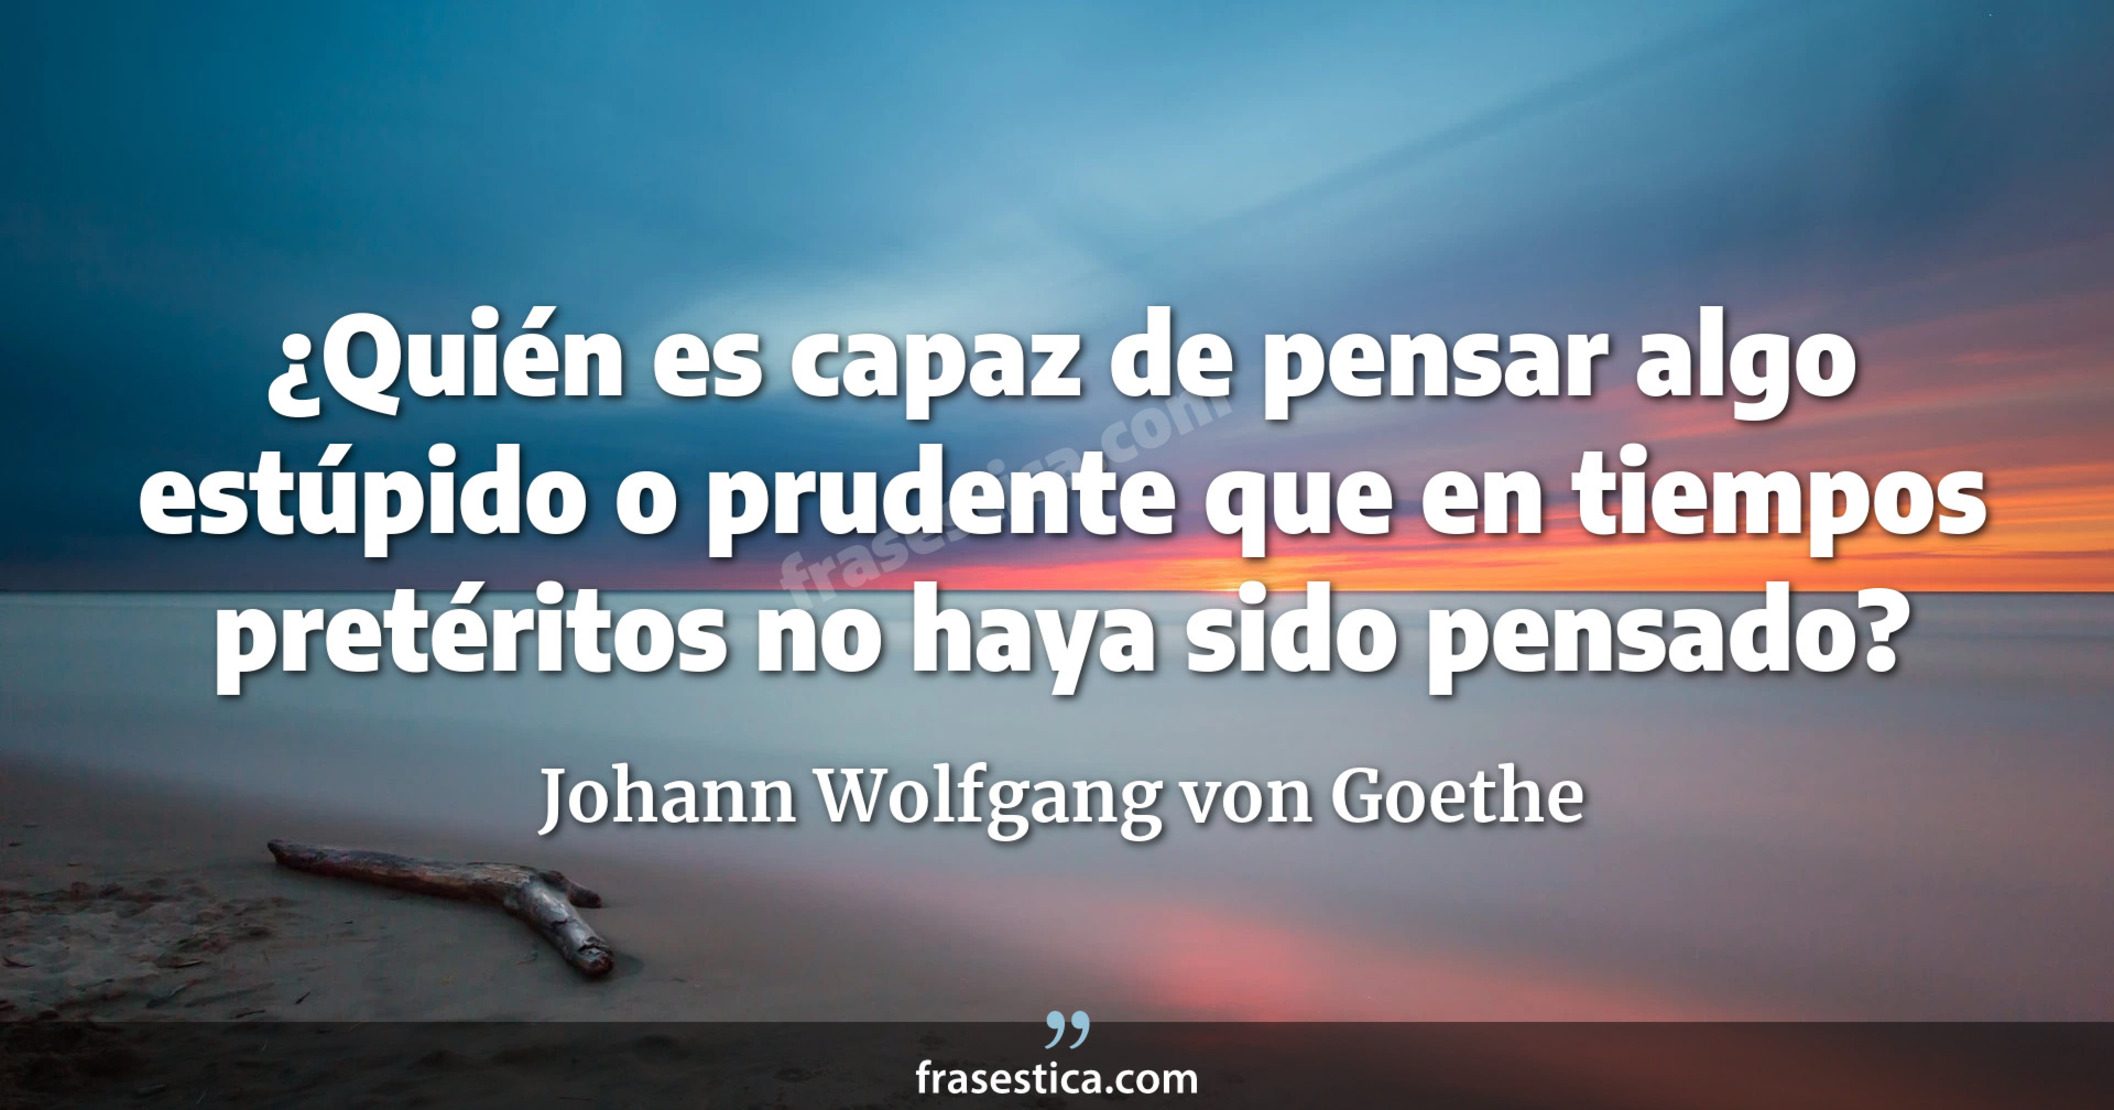 ¿Quién es capaz de pensar algo estúpido o prudente que en tiempos pretéritos no haya sido pensado? - Johann Wolfgang von Goethe